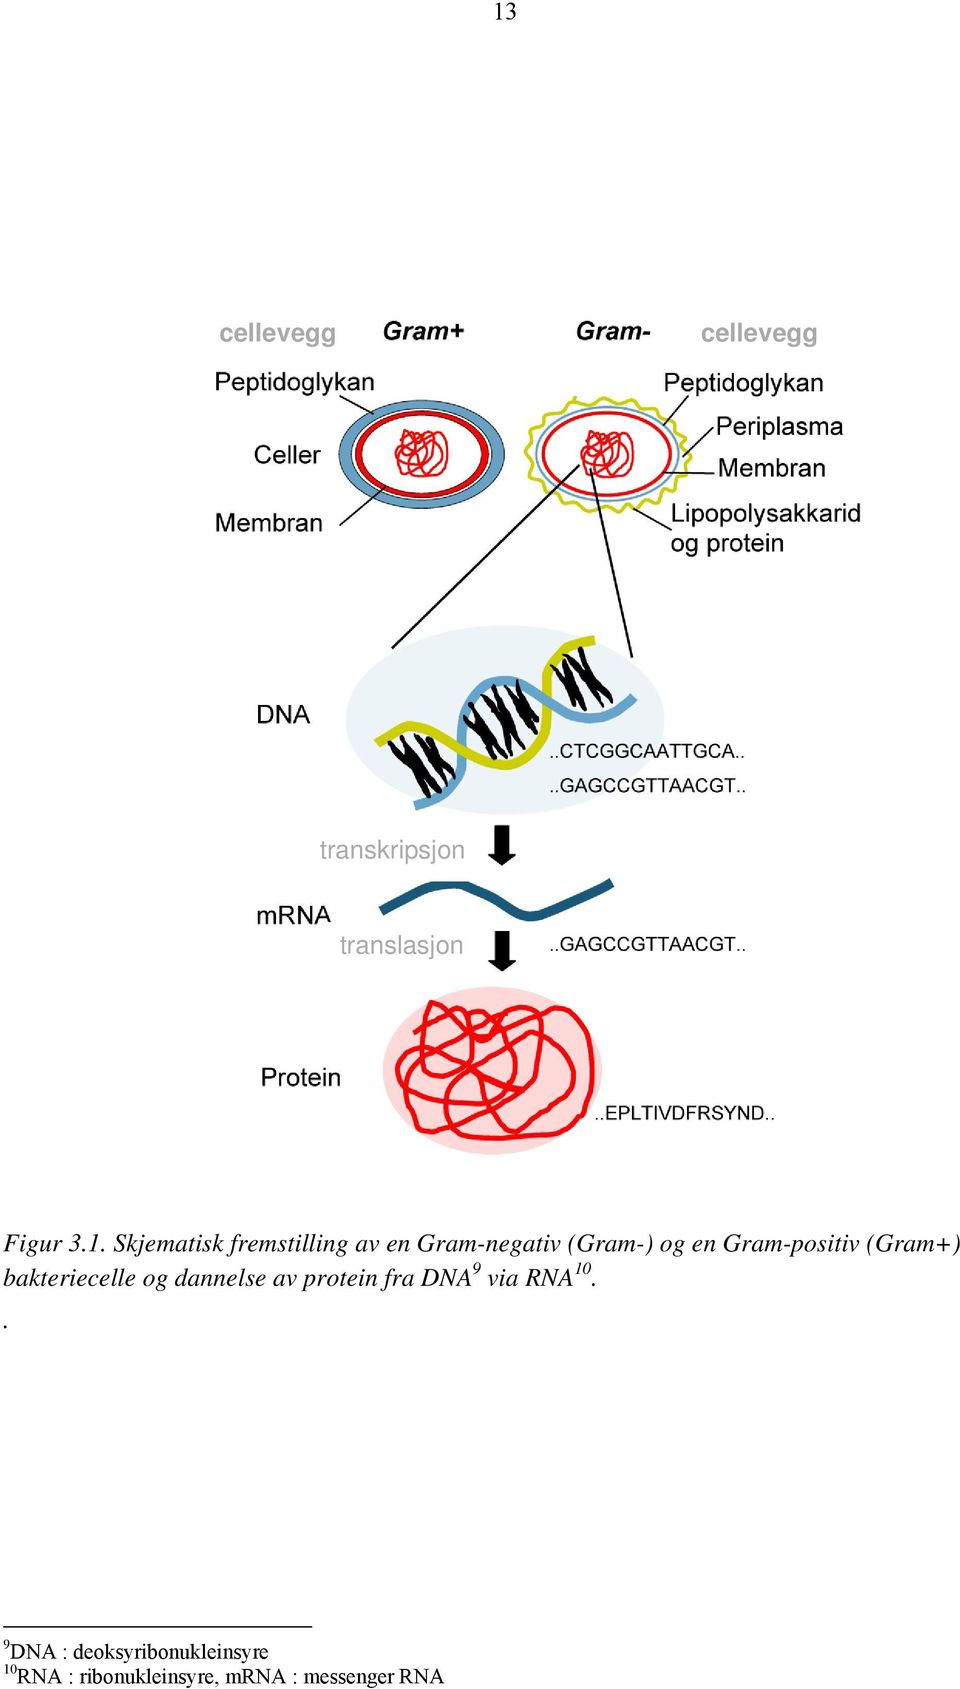 Gram-positiv (Gram+) bakteriecelle og dannelse av protein fra DNA 9